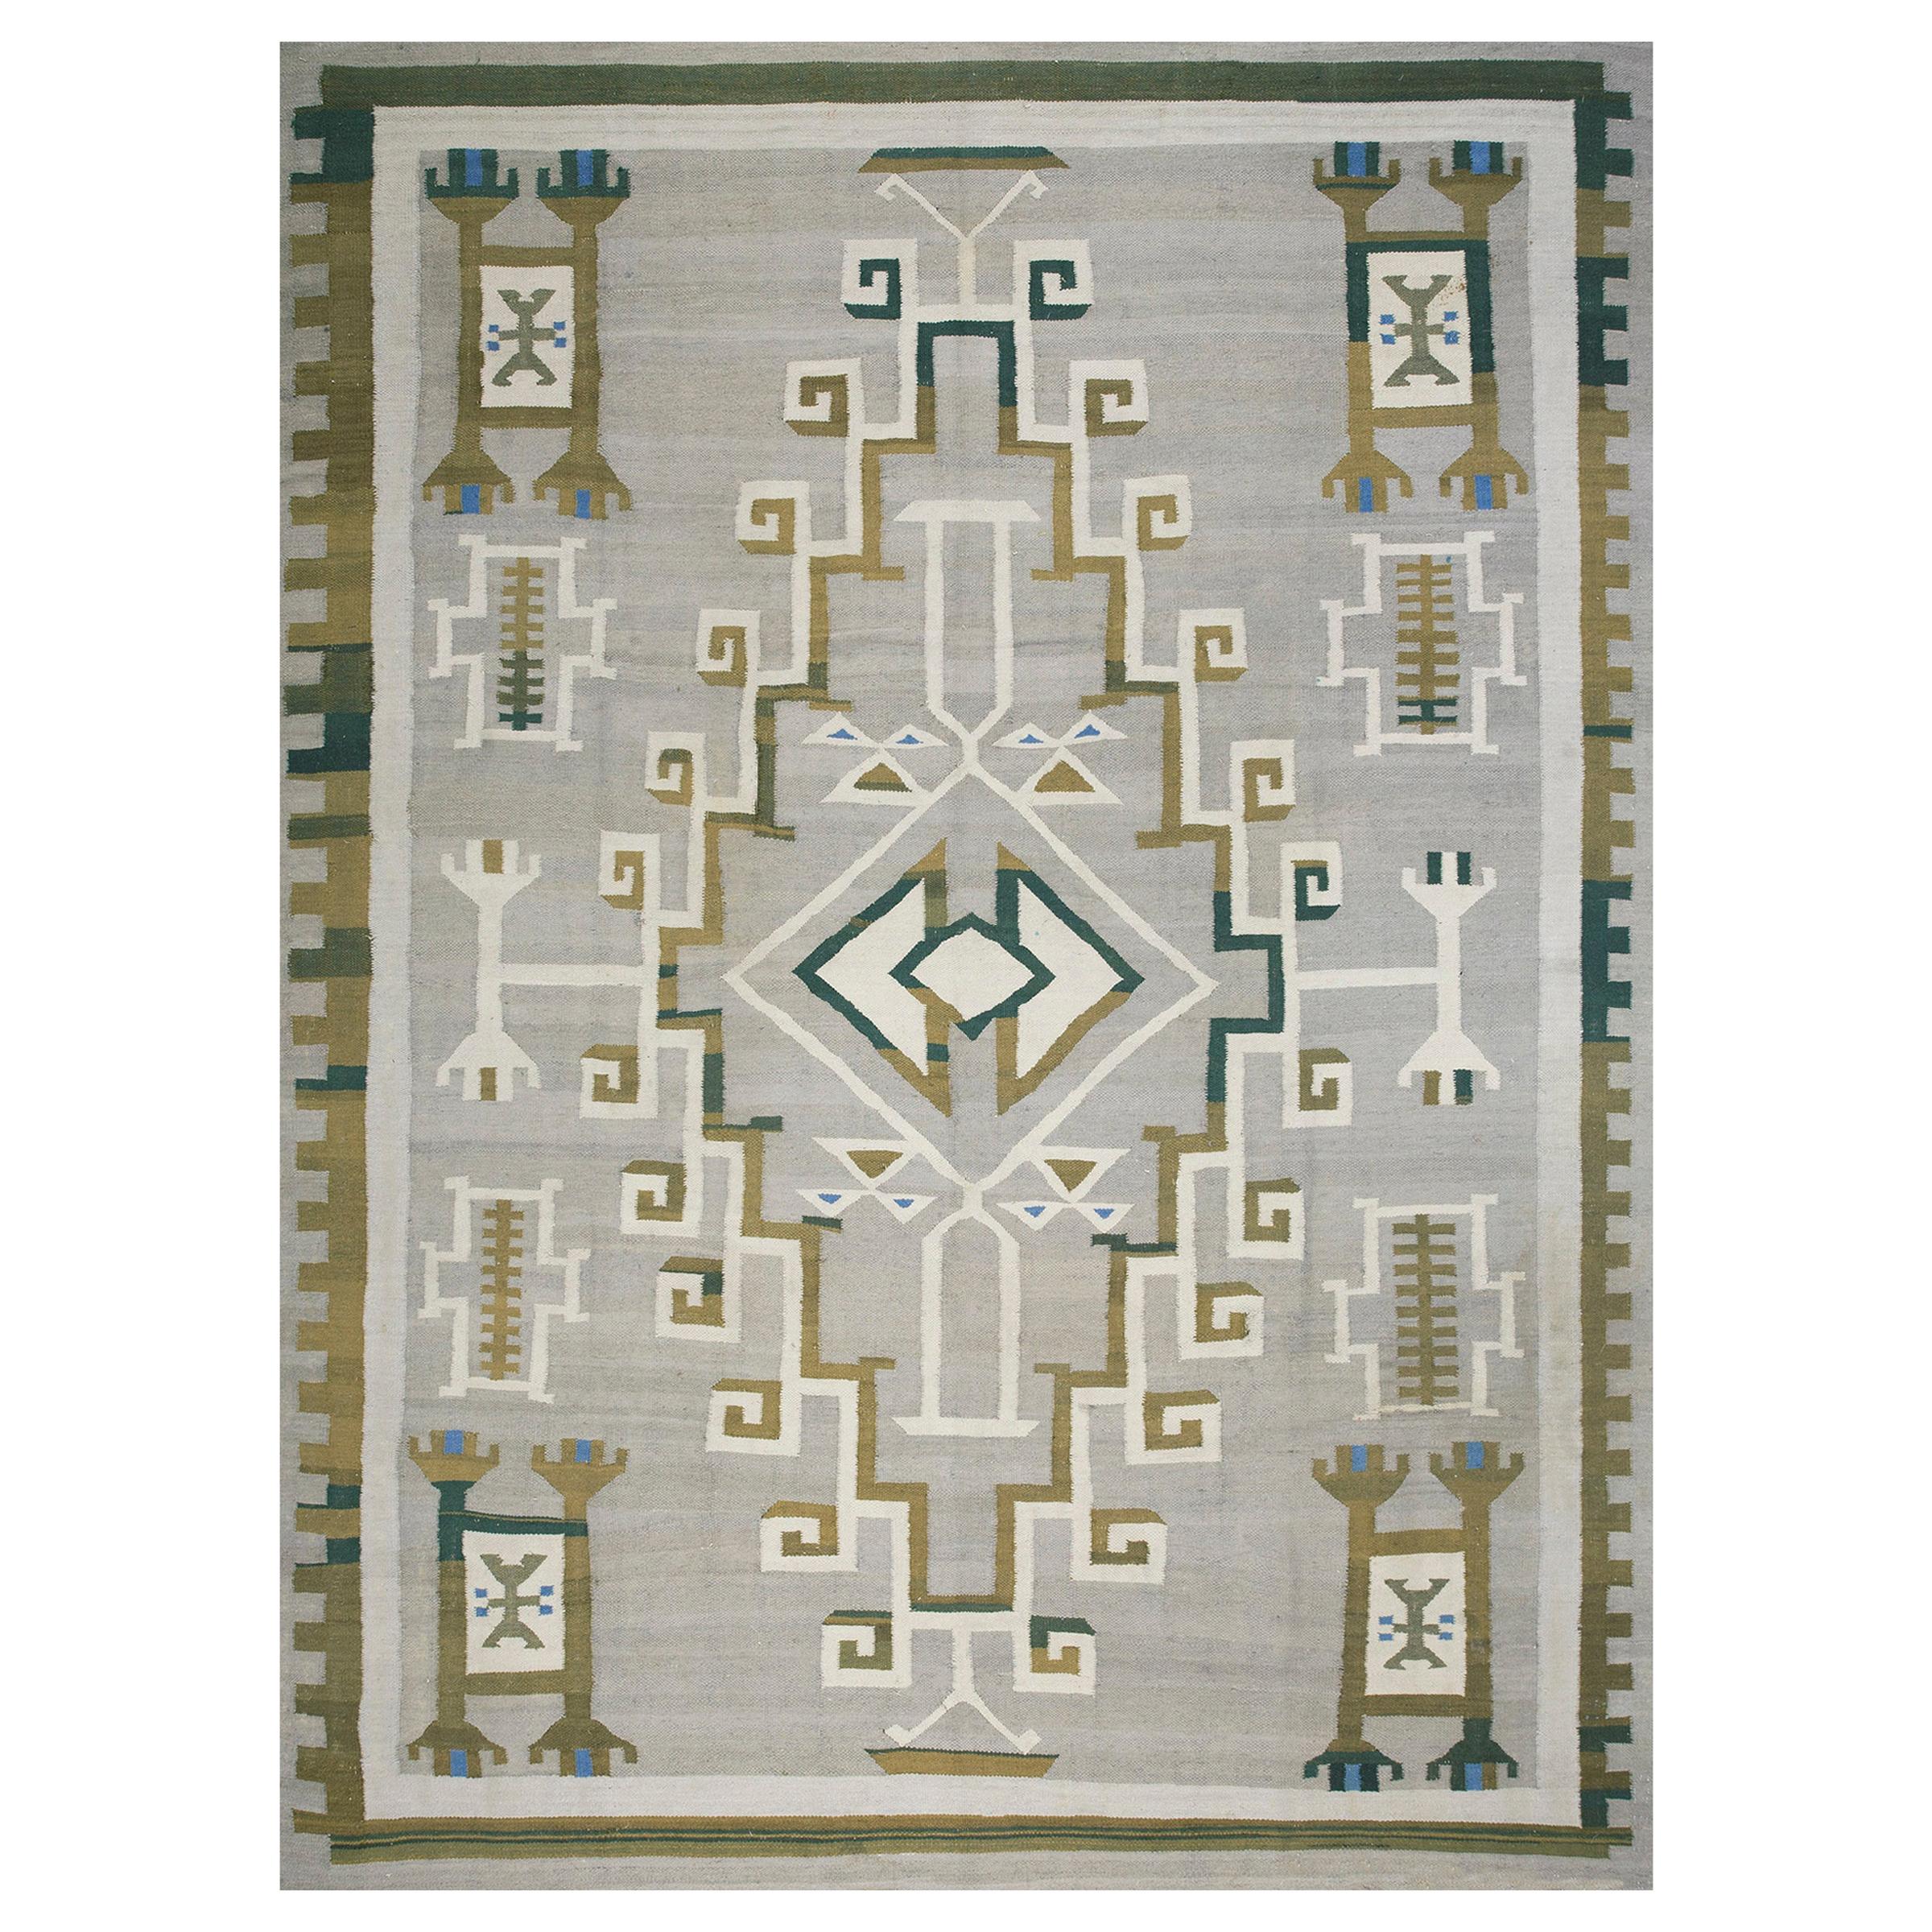 Amerikanischer Navajo-Teppich des frühen 20. Jahrhunderts ( 9' x 11'10" - 275 x 360)